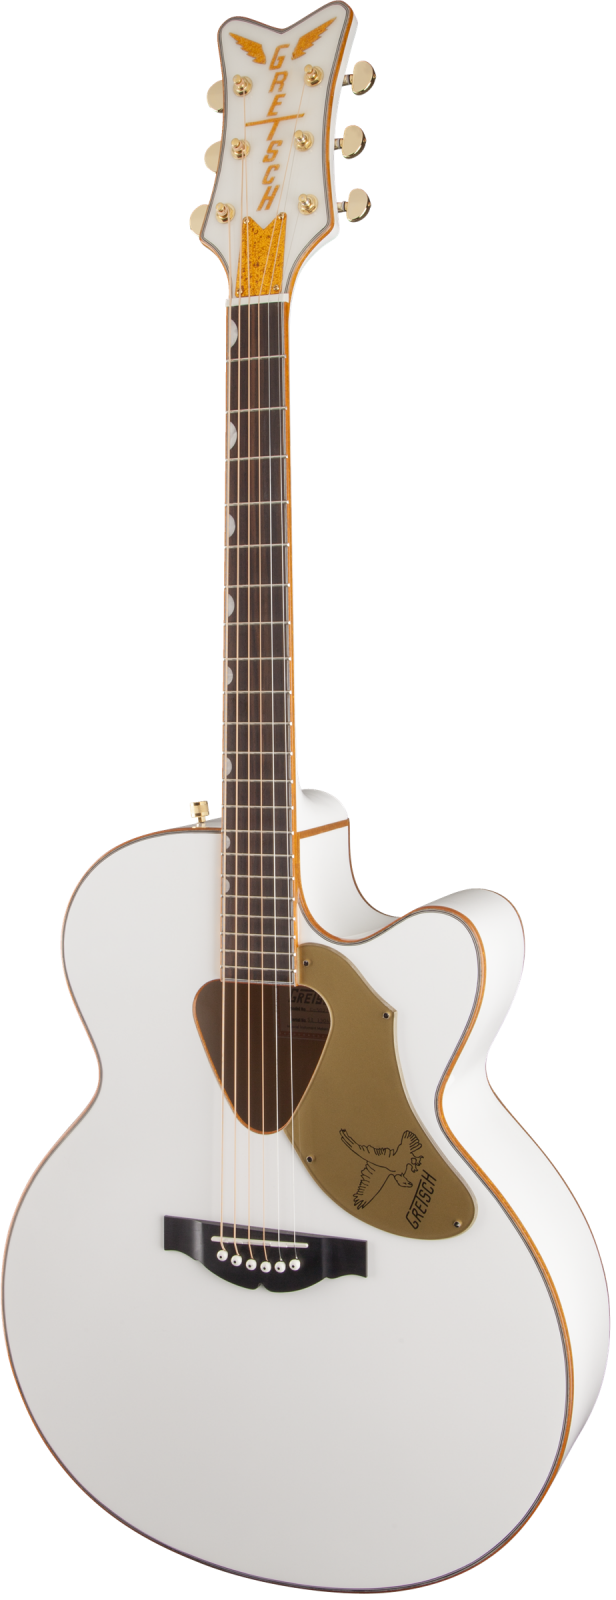 Gretsch G5022CWFE Rancher Falcon Jumbo Cutaway Acoustic-Electric Guitar - White